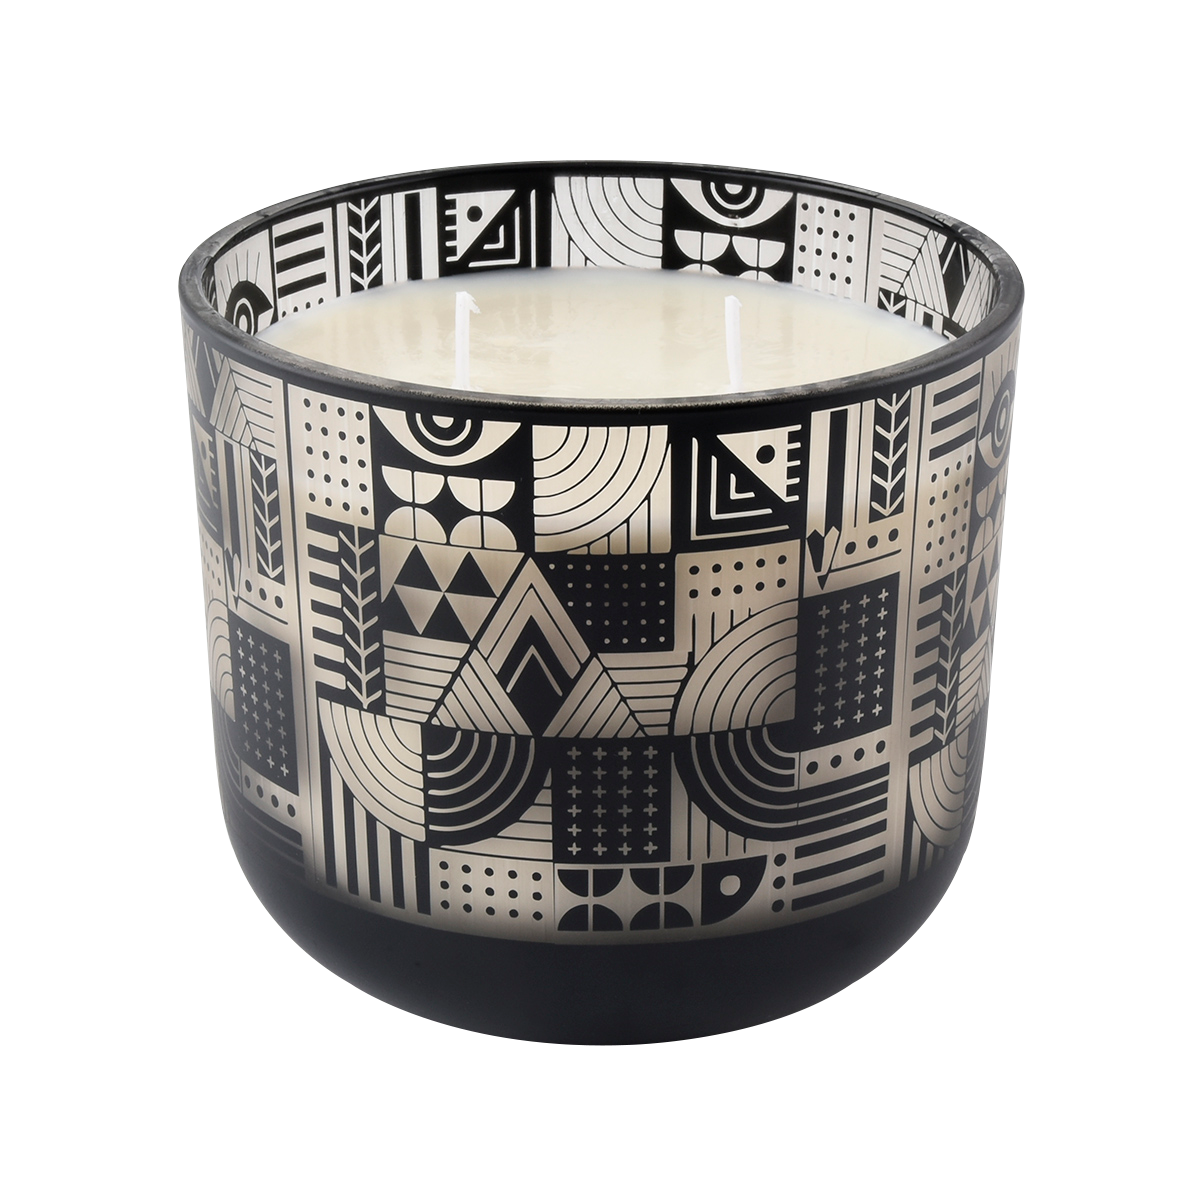 1000ml cristal negro vela tarros figura geométrica diseño de patrón de diseño láser proceso de grabado